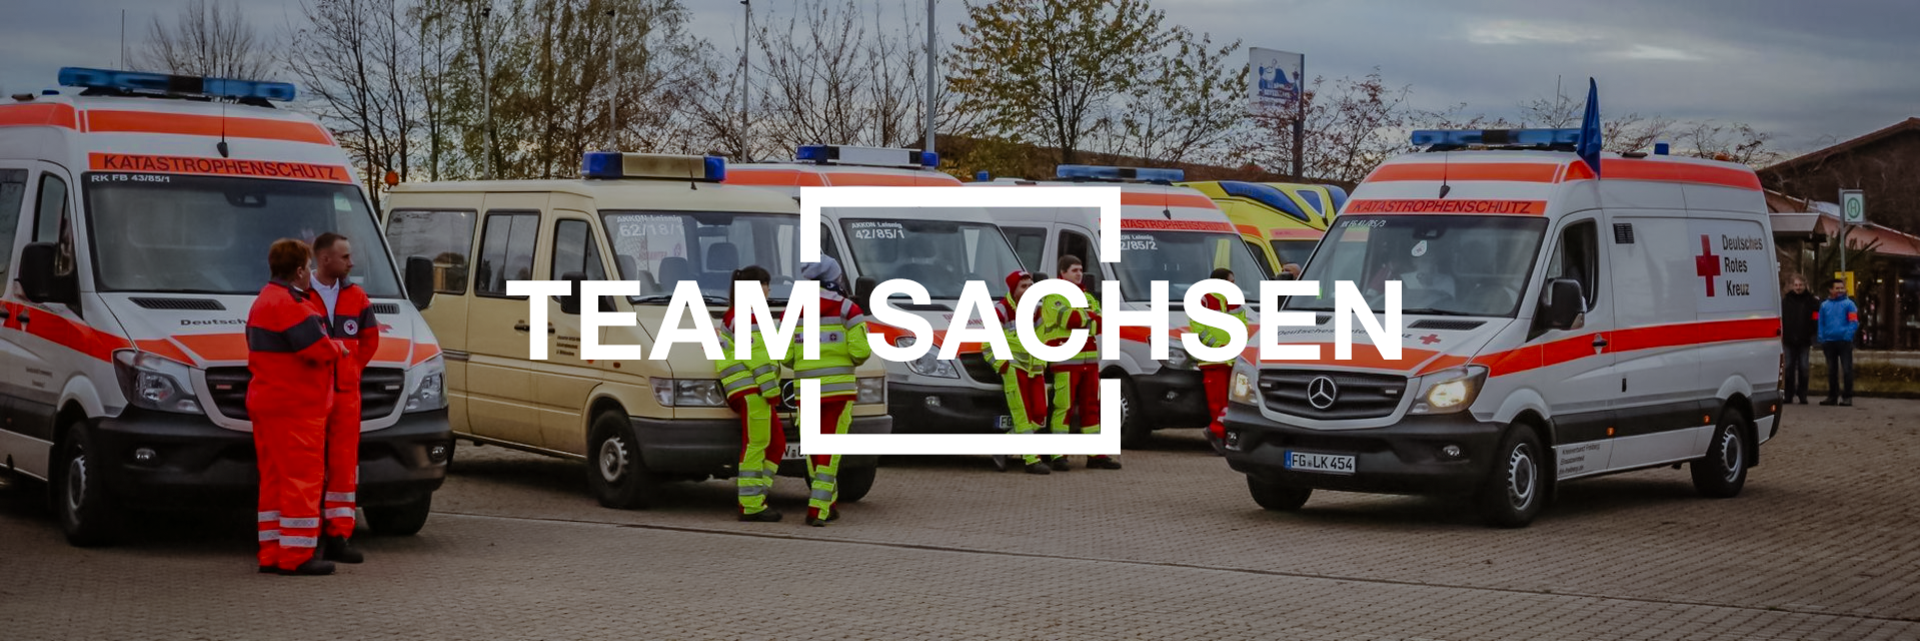 Team Sachsen - Rettungsfahrzeuge und Mitarbeiter des DRK